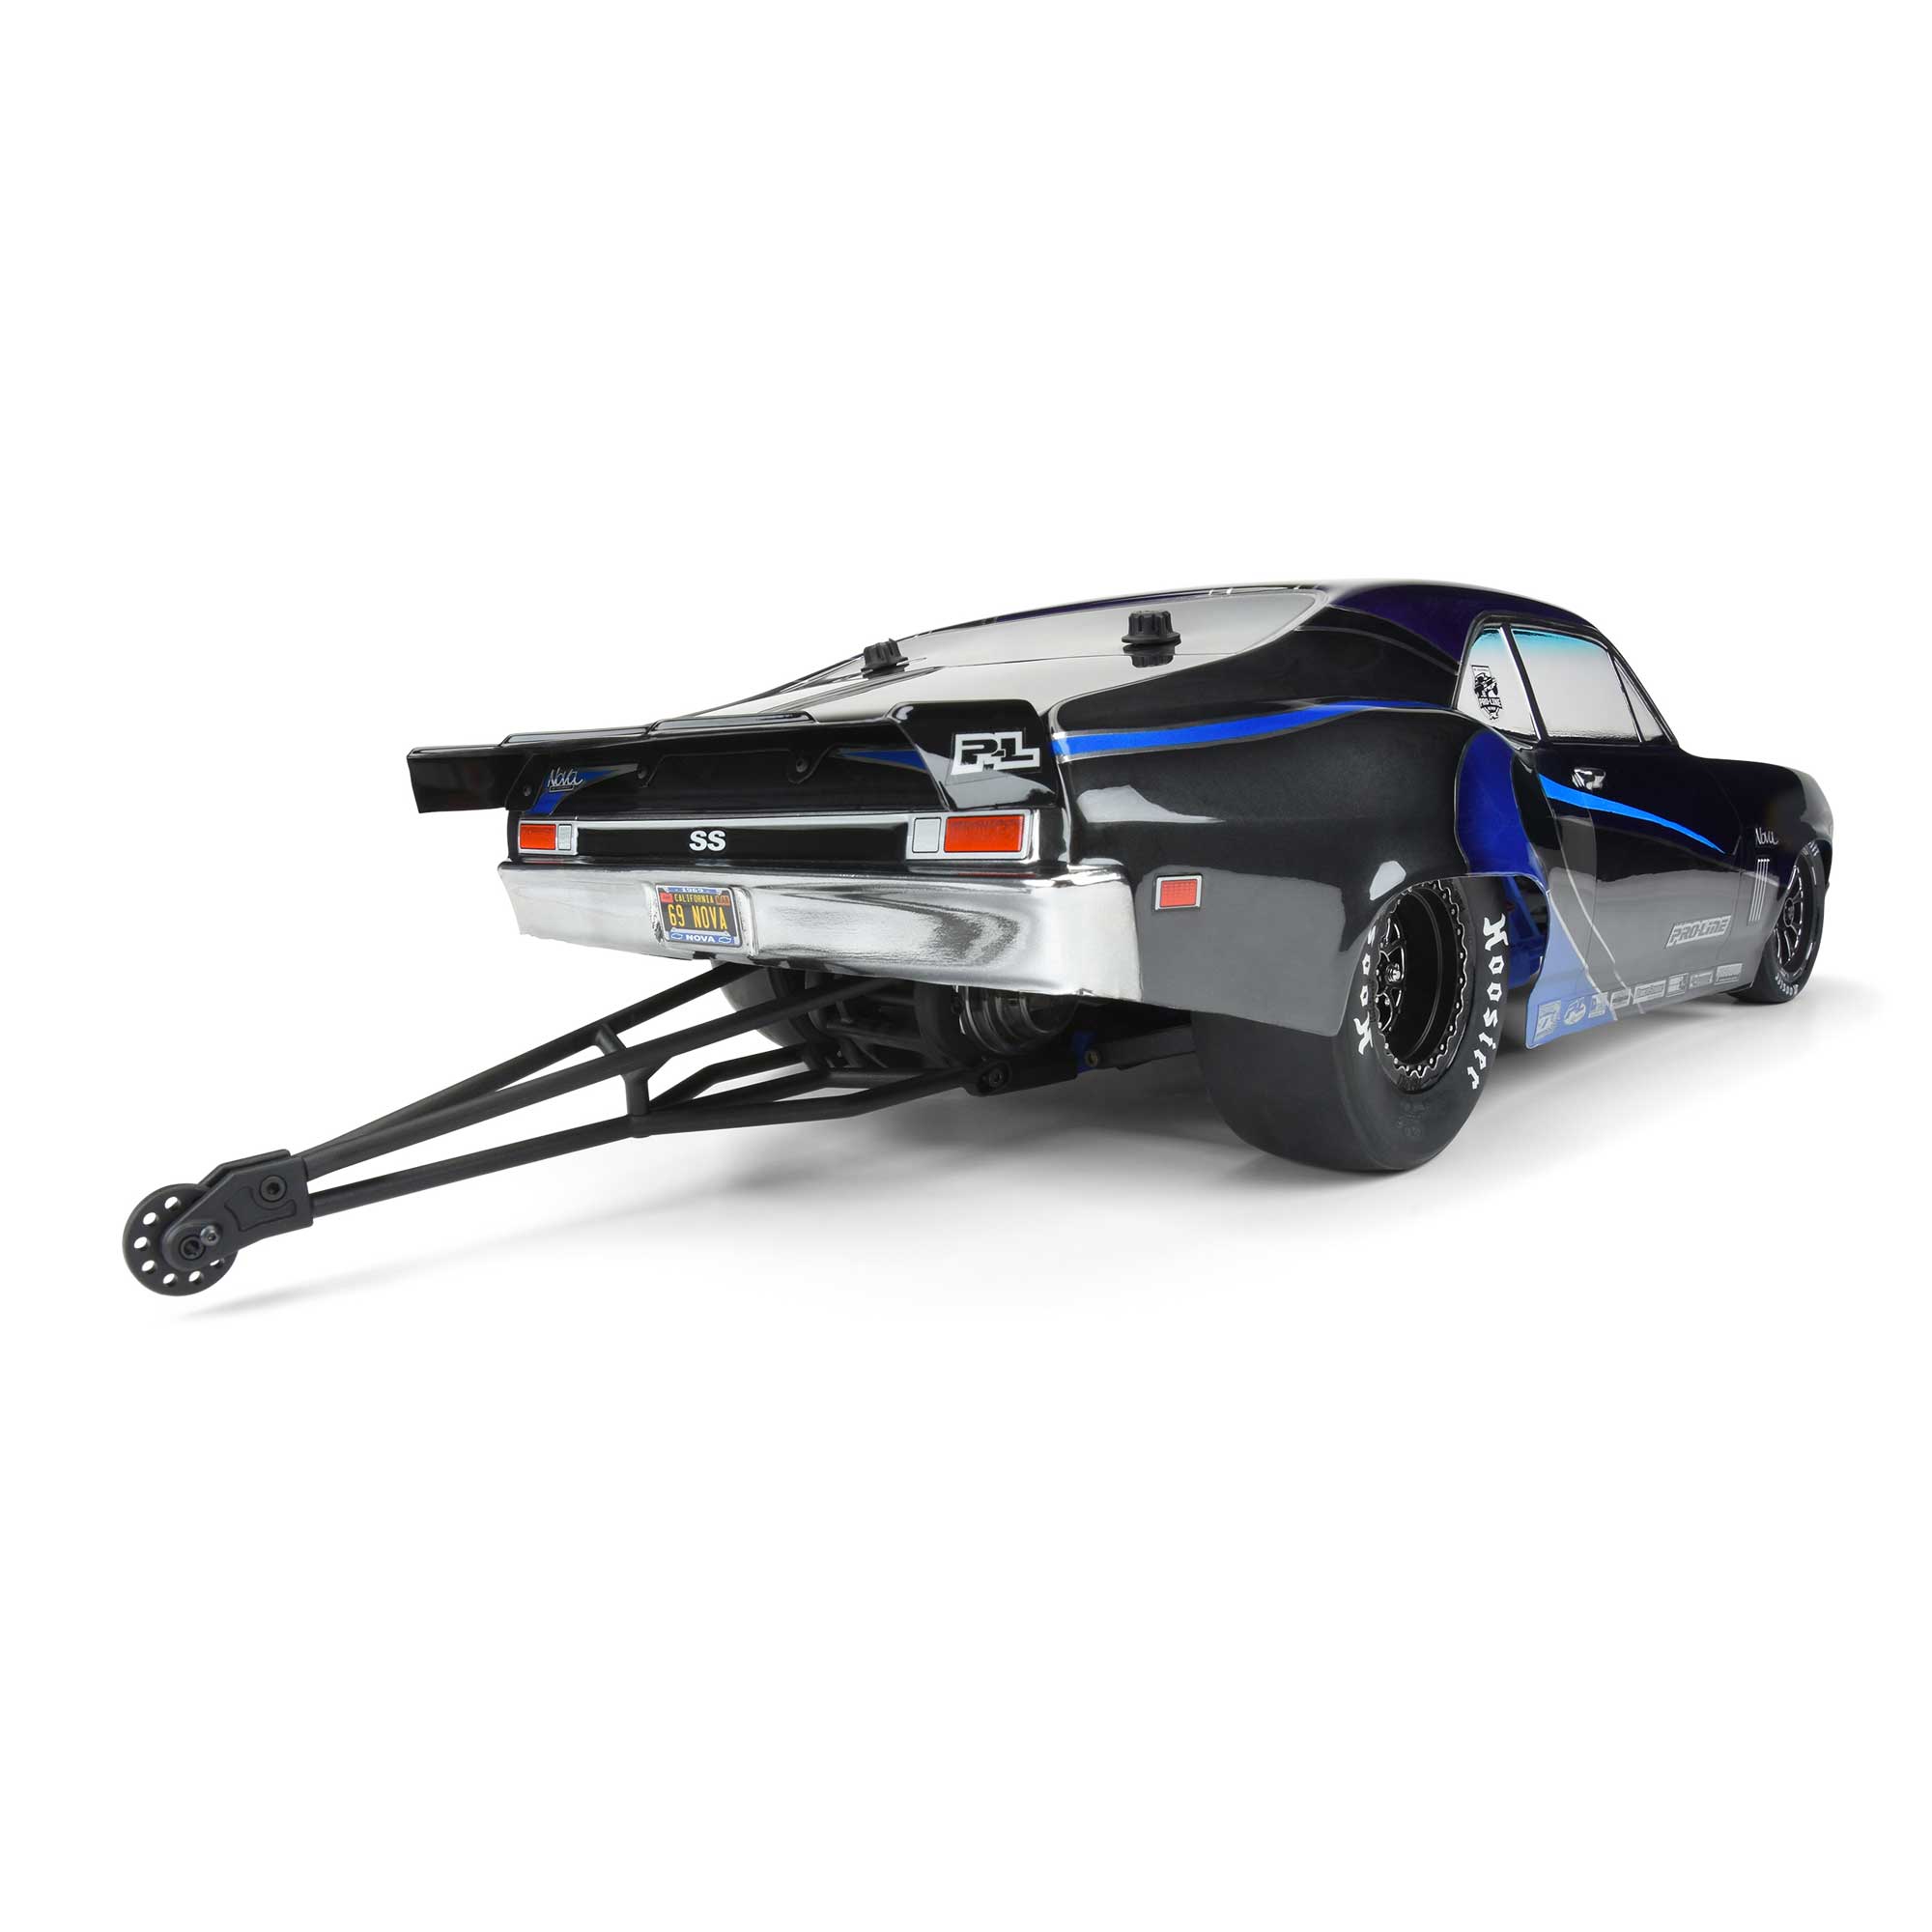 ST Racing Green Wheelie Bar Adapter Kit for Slash Width Wheelie Bars STC71071AG 